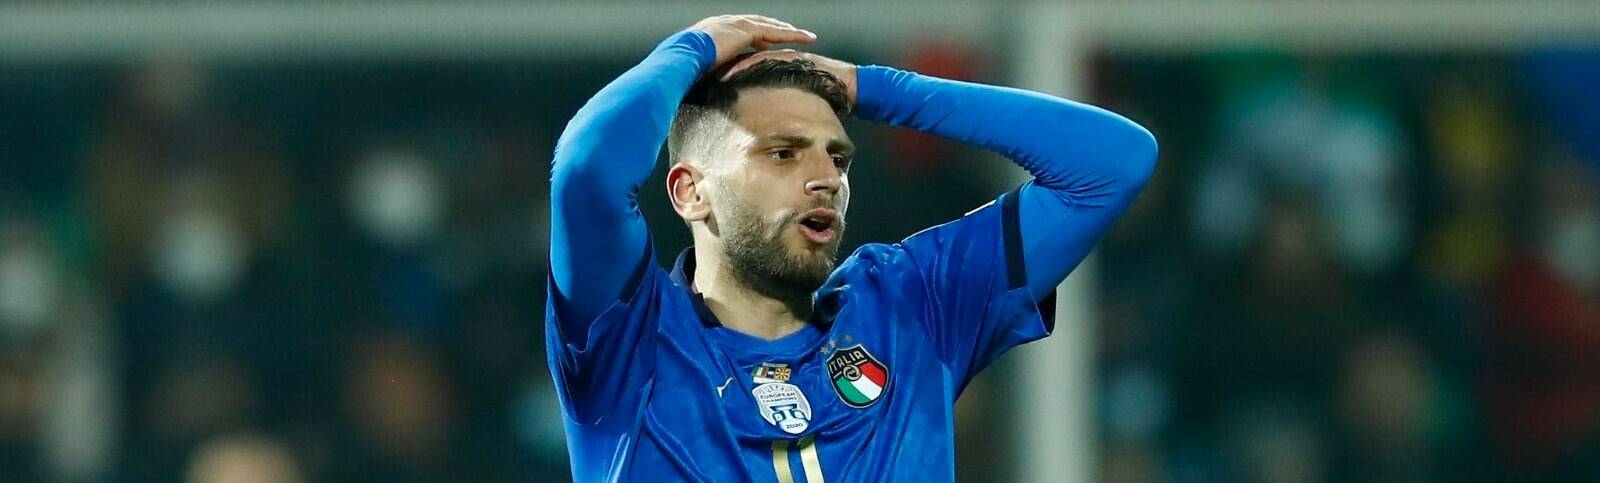 L’Italia dice addio ai Mondiali: i commenti della stampa estera